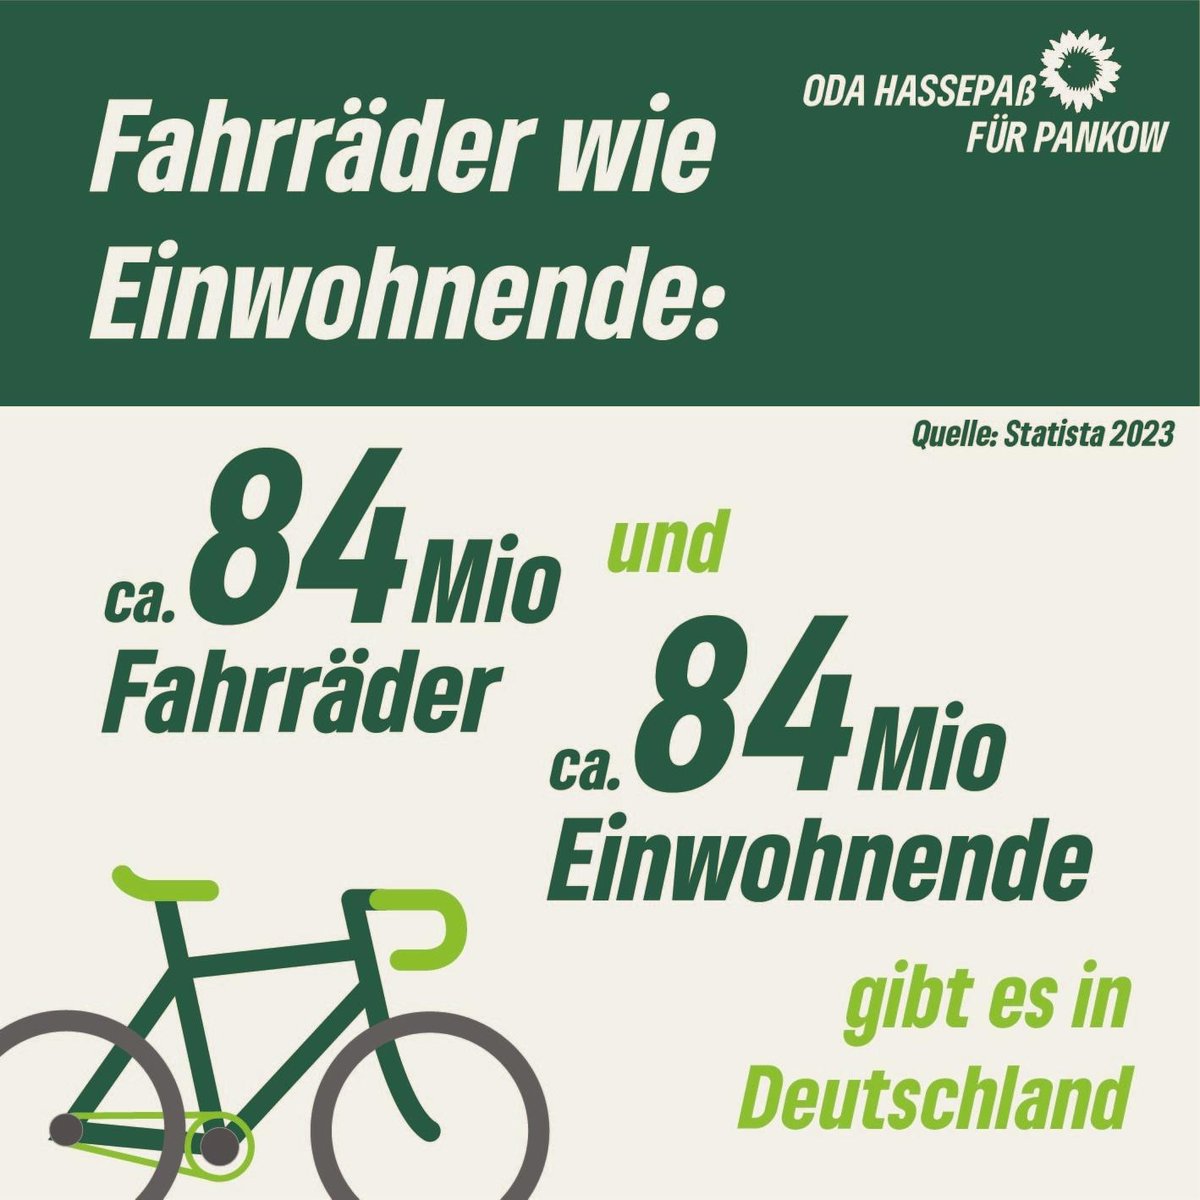 In #Deutschland gibt es ungefähr genauso viele #Fahrräder wie Einwohndende. Immer mehr Menschen entscheiden sich für eine klimafreundliche Form der #Mobilität. #Fahrradfahren macht glücklich, hält fit und ist umweltschonend. Das ist ein Erfolg für die #Verkehrswende!